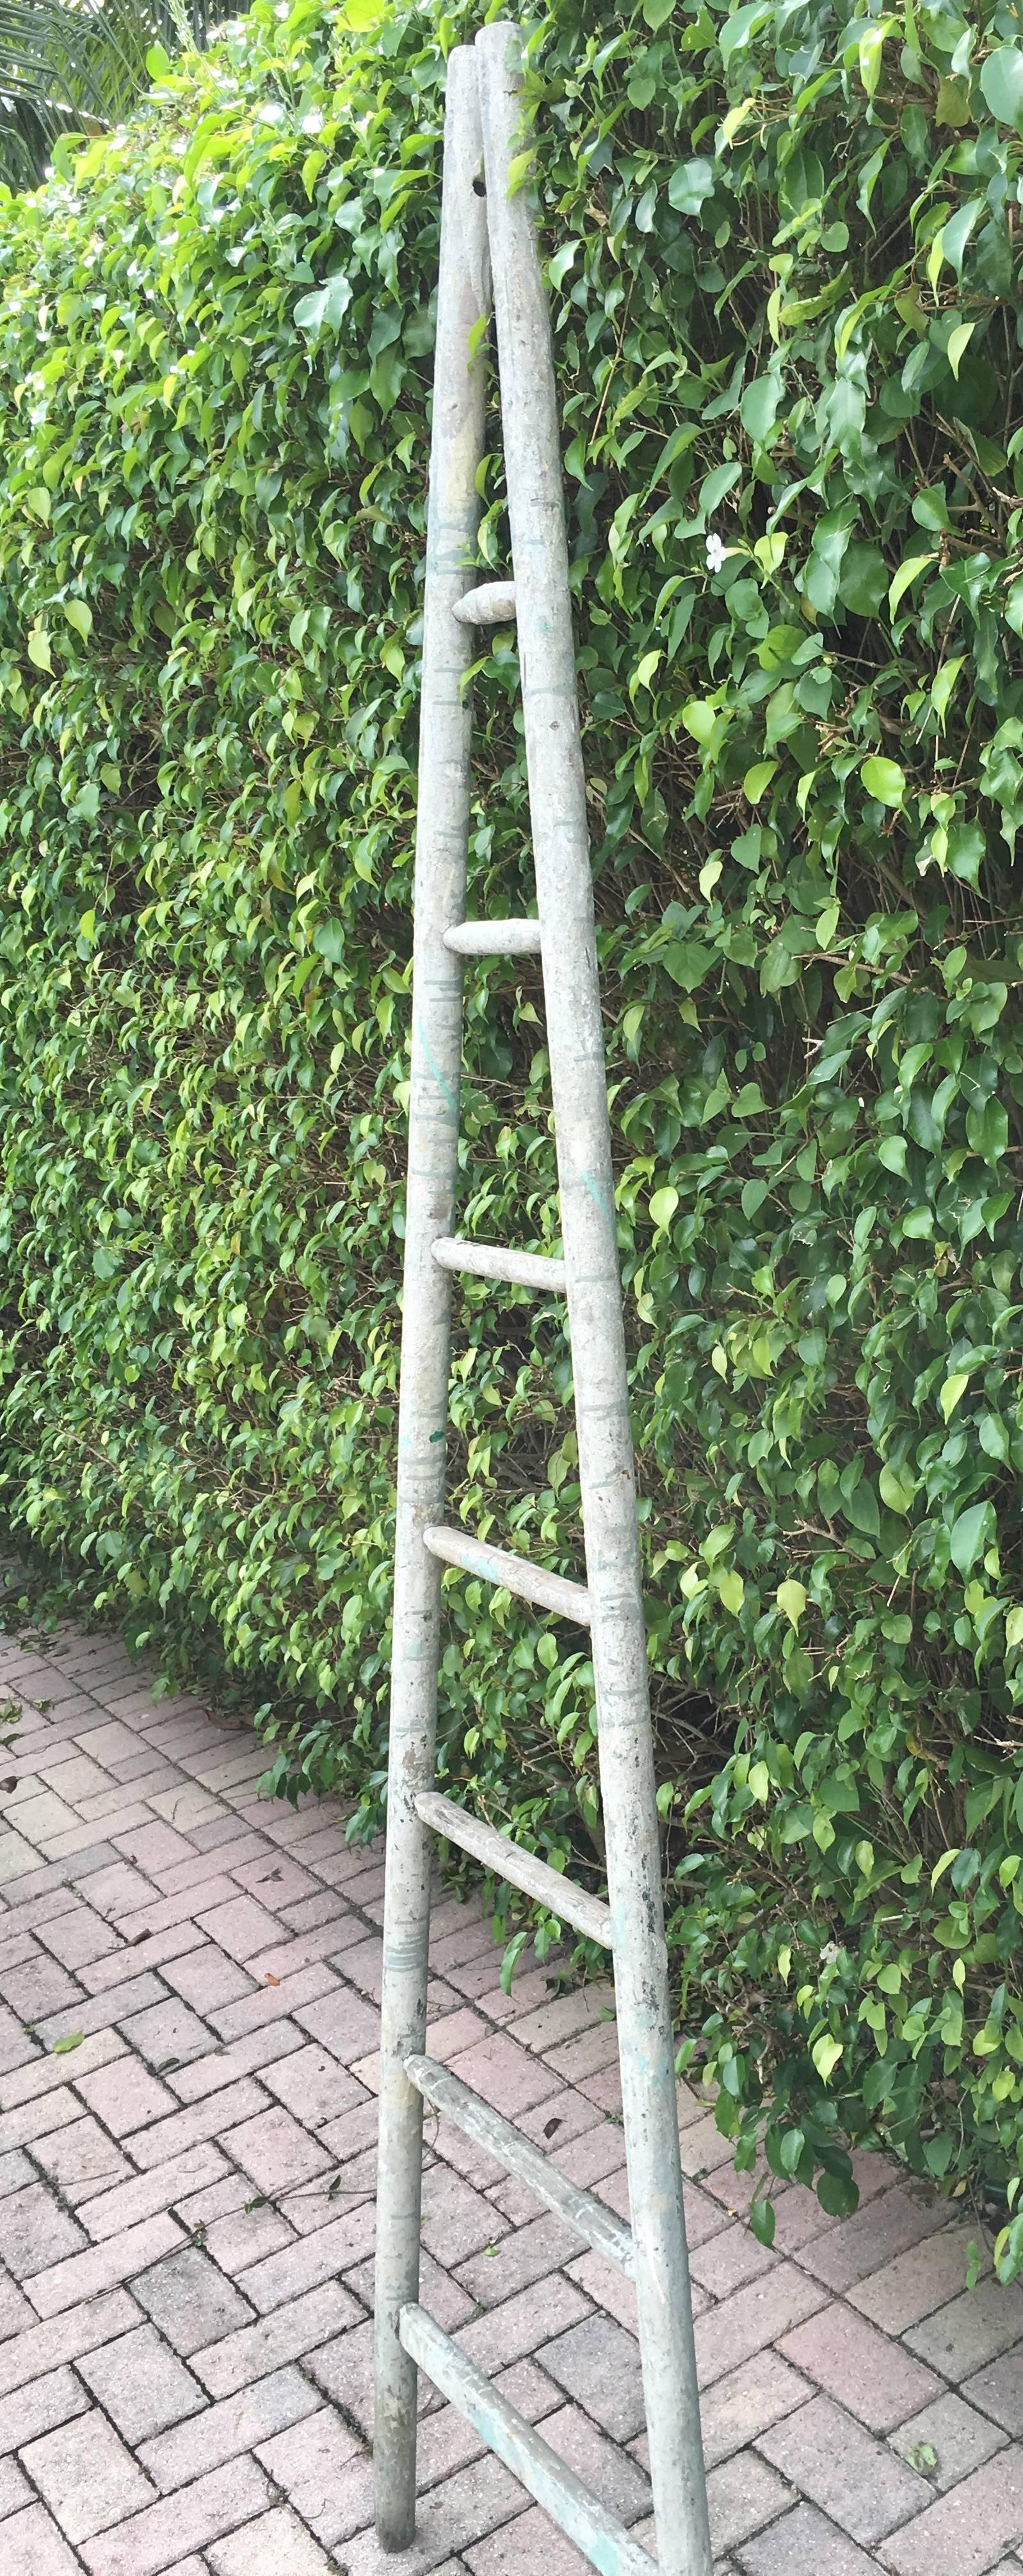 American Vintage Orchard Ladder